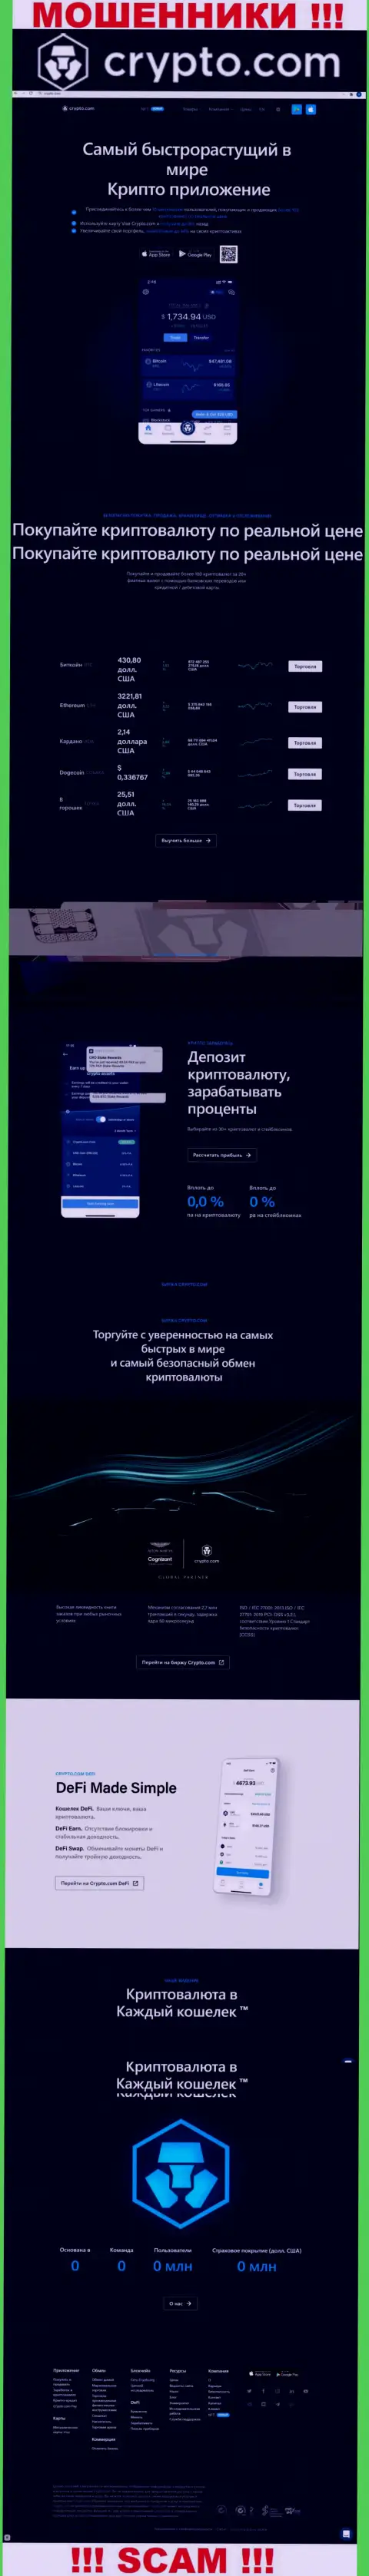 Официальный web-сайт мошенников КриптоКом, забитый сведениями для наивных людей